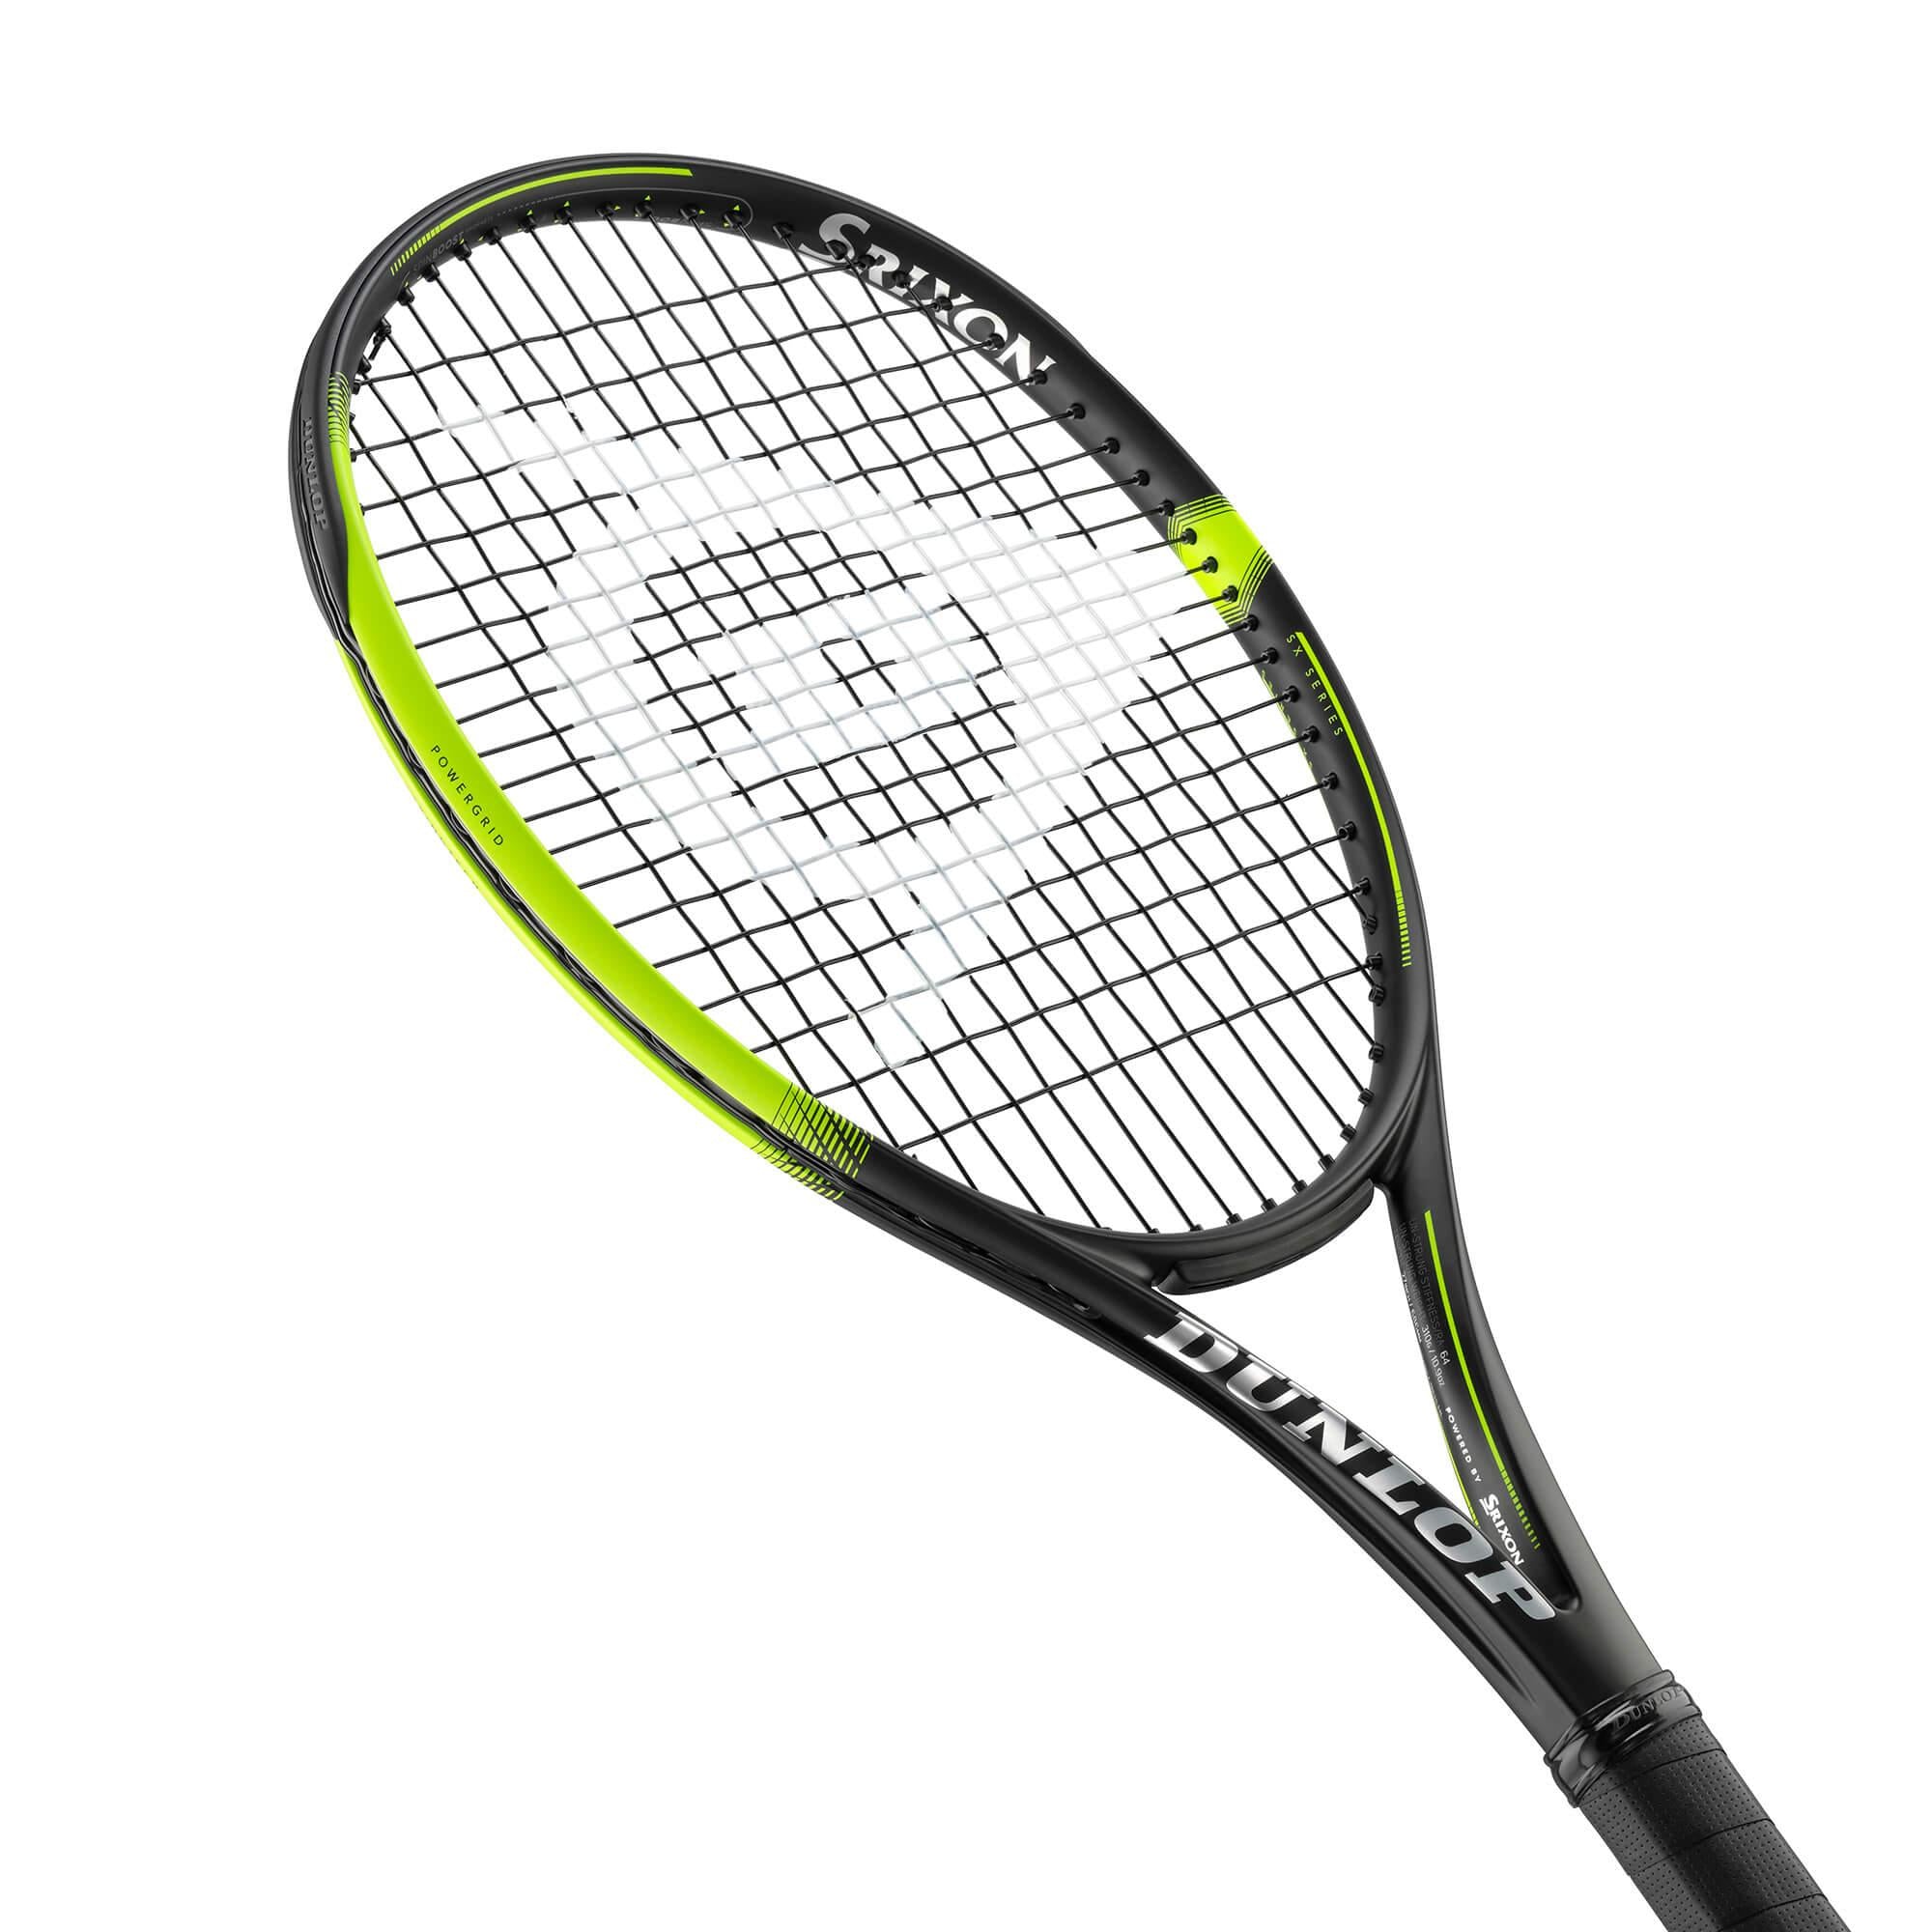 TF SX300 Tour G3 Tennis Racket